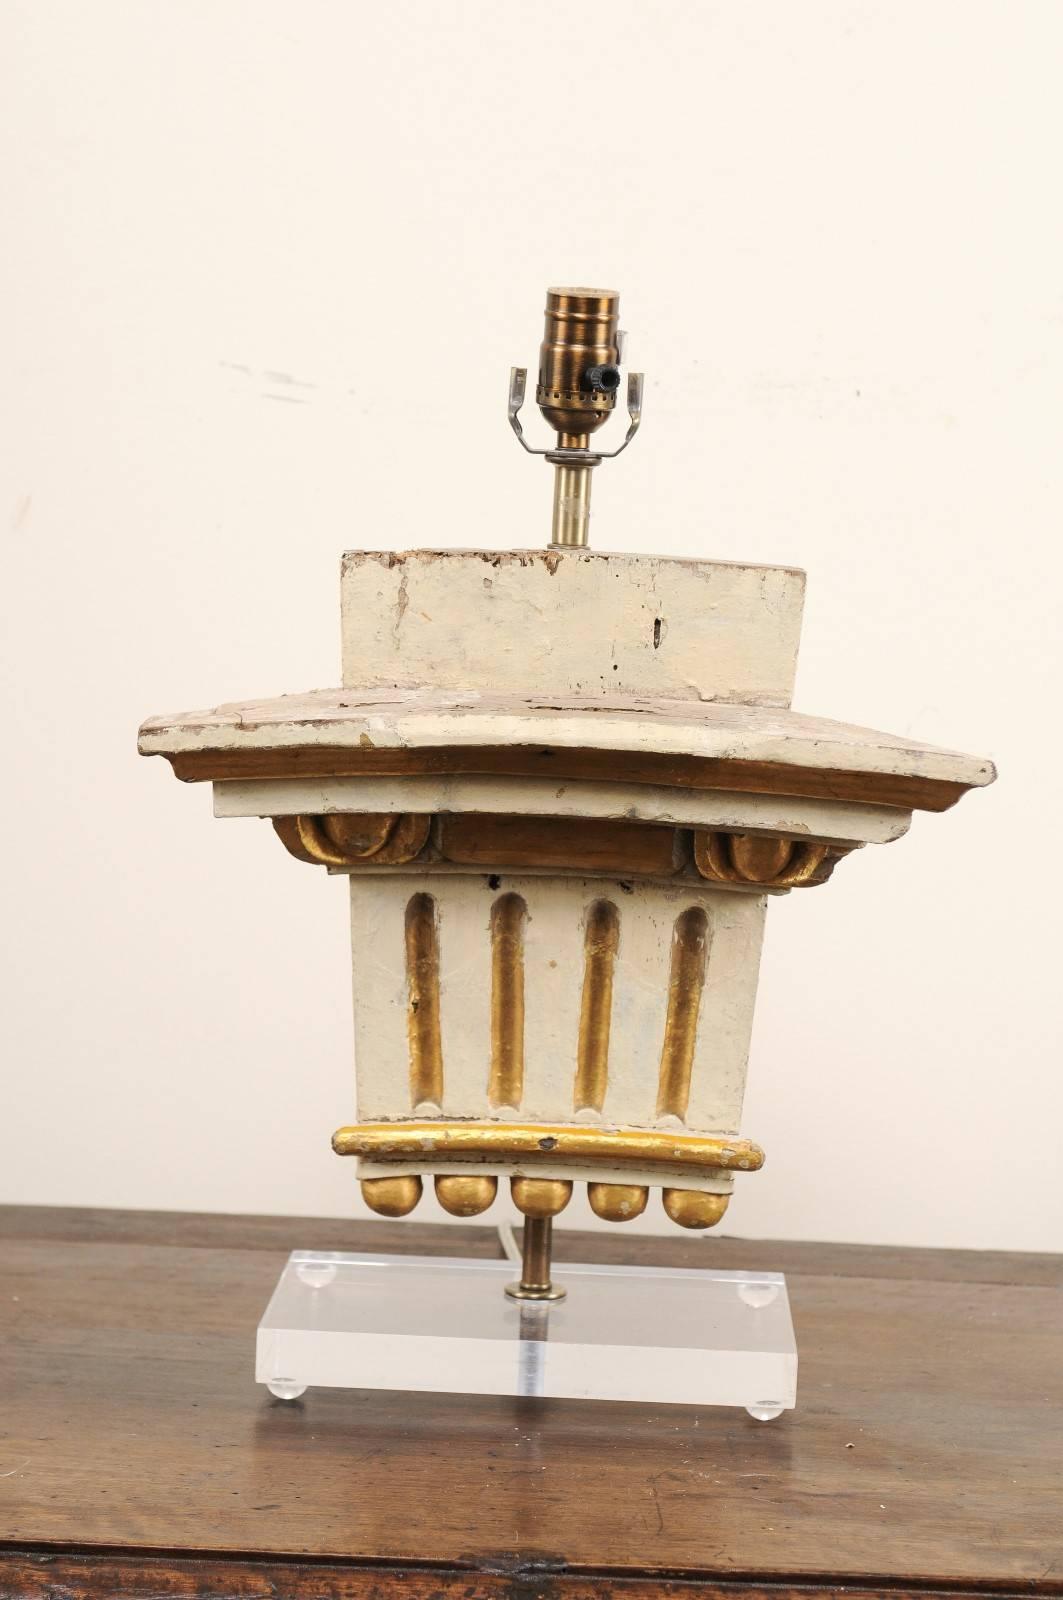 Lampe de table italienne à fragment du XIXe siècle. Cette lampe de table a été fabriquée à partir d'un fragment italien du XIXe siècle qui a été monté sur une base en Lucite plus récente. Cette lampe présente un fragment tridimensionnel sculpté de